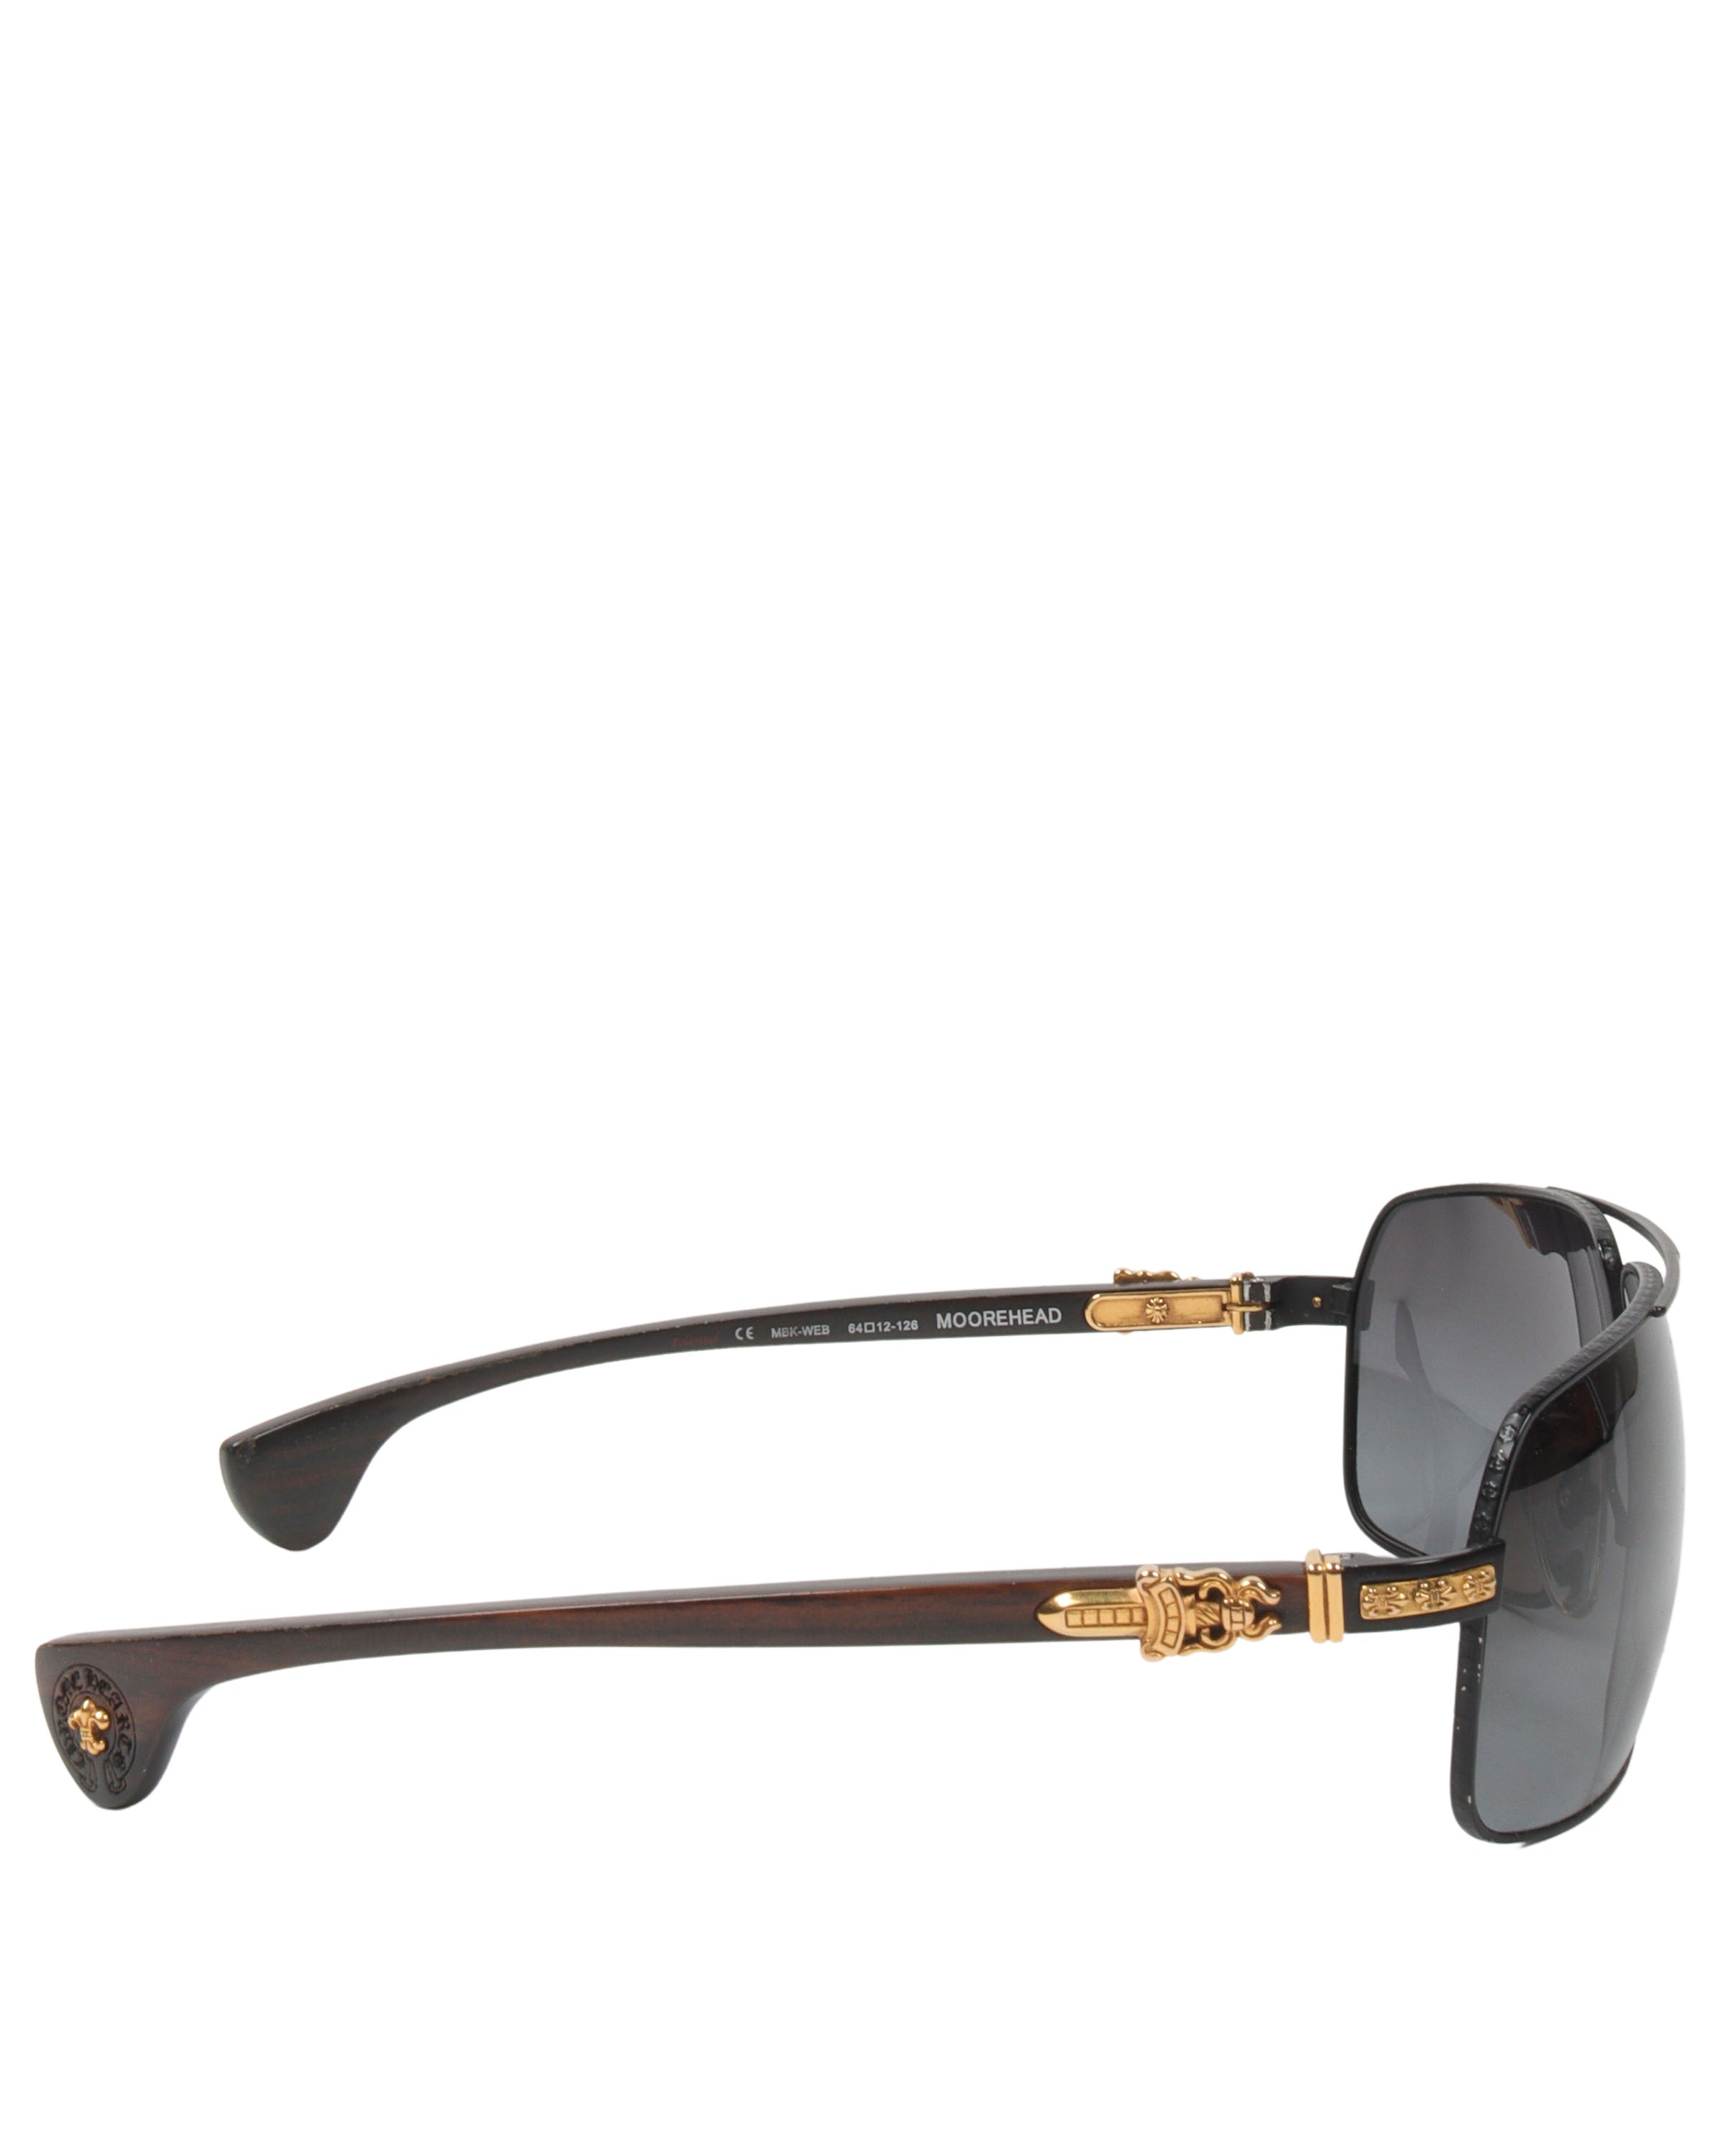 Moorehead Sunglasses